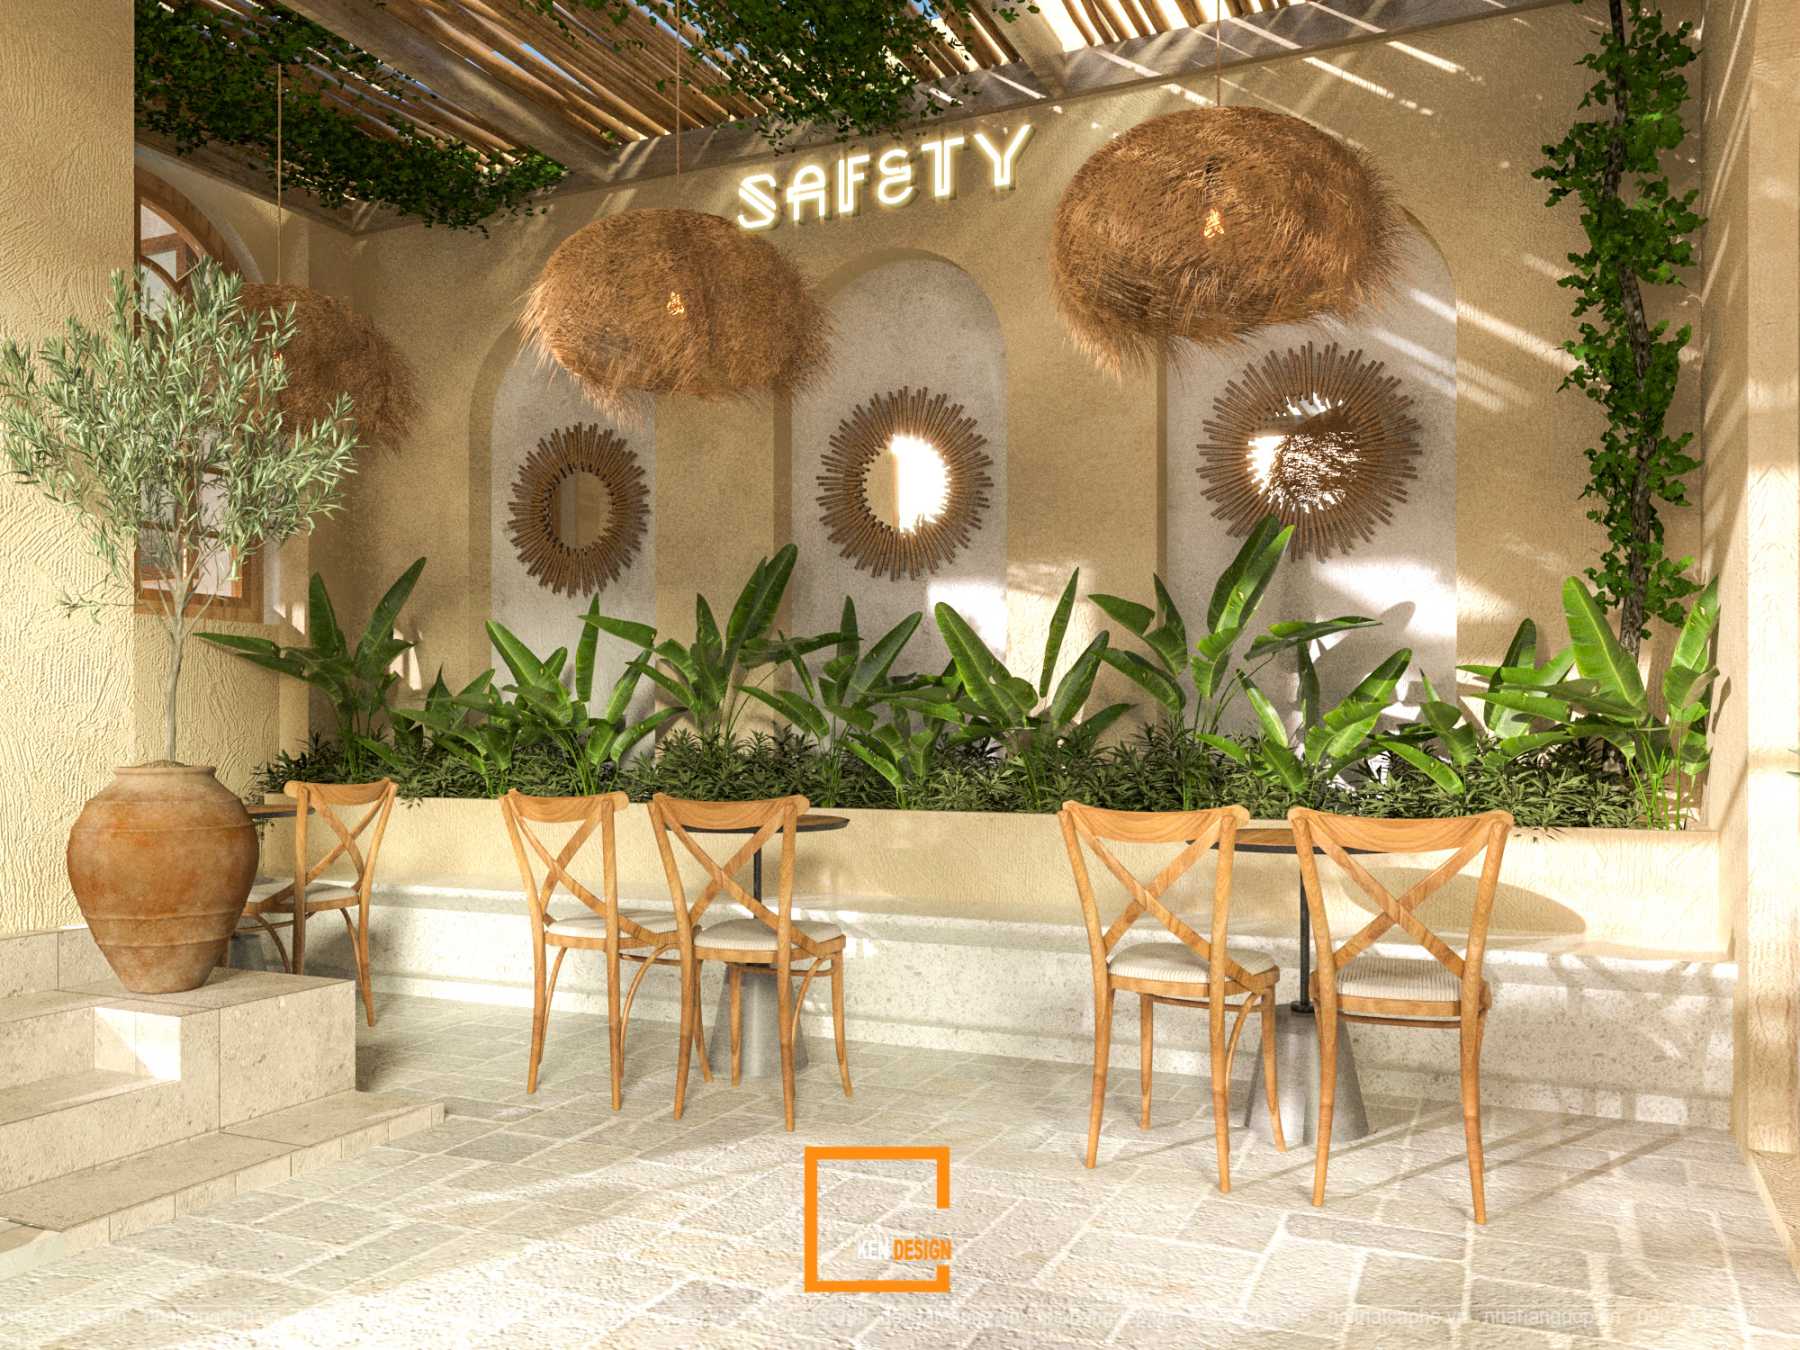 Thiết kế quán cafe Safety - Vẻ đẹp của phong cách Tropial